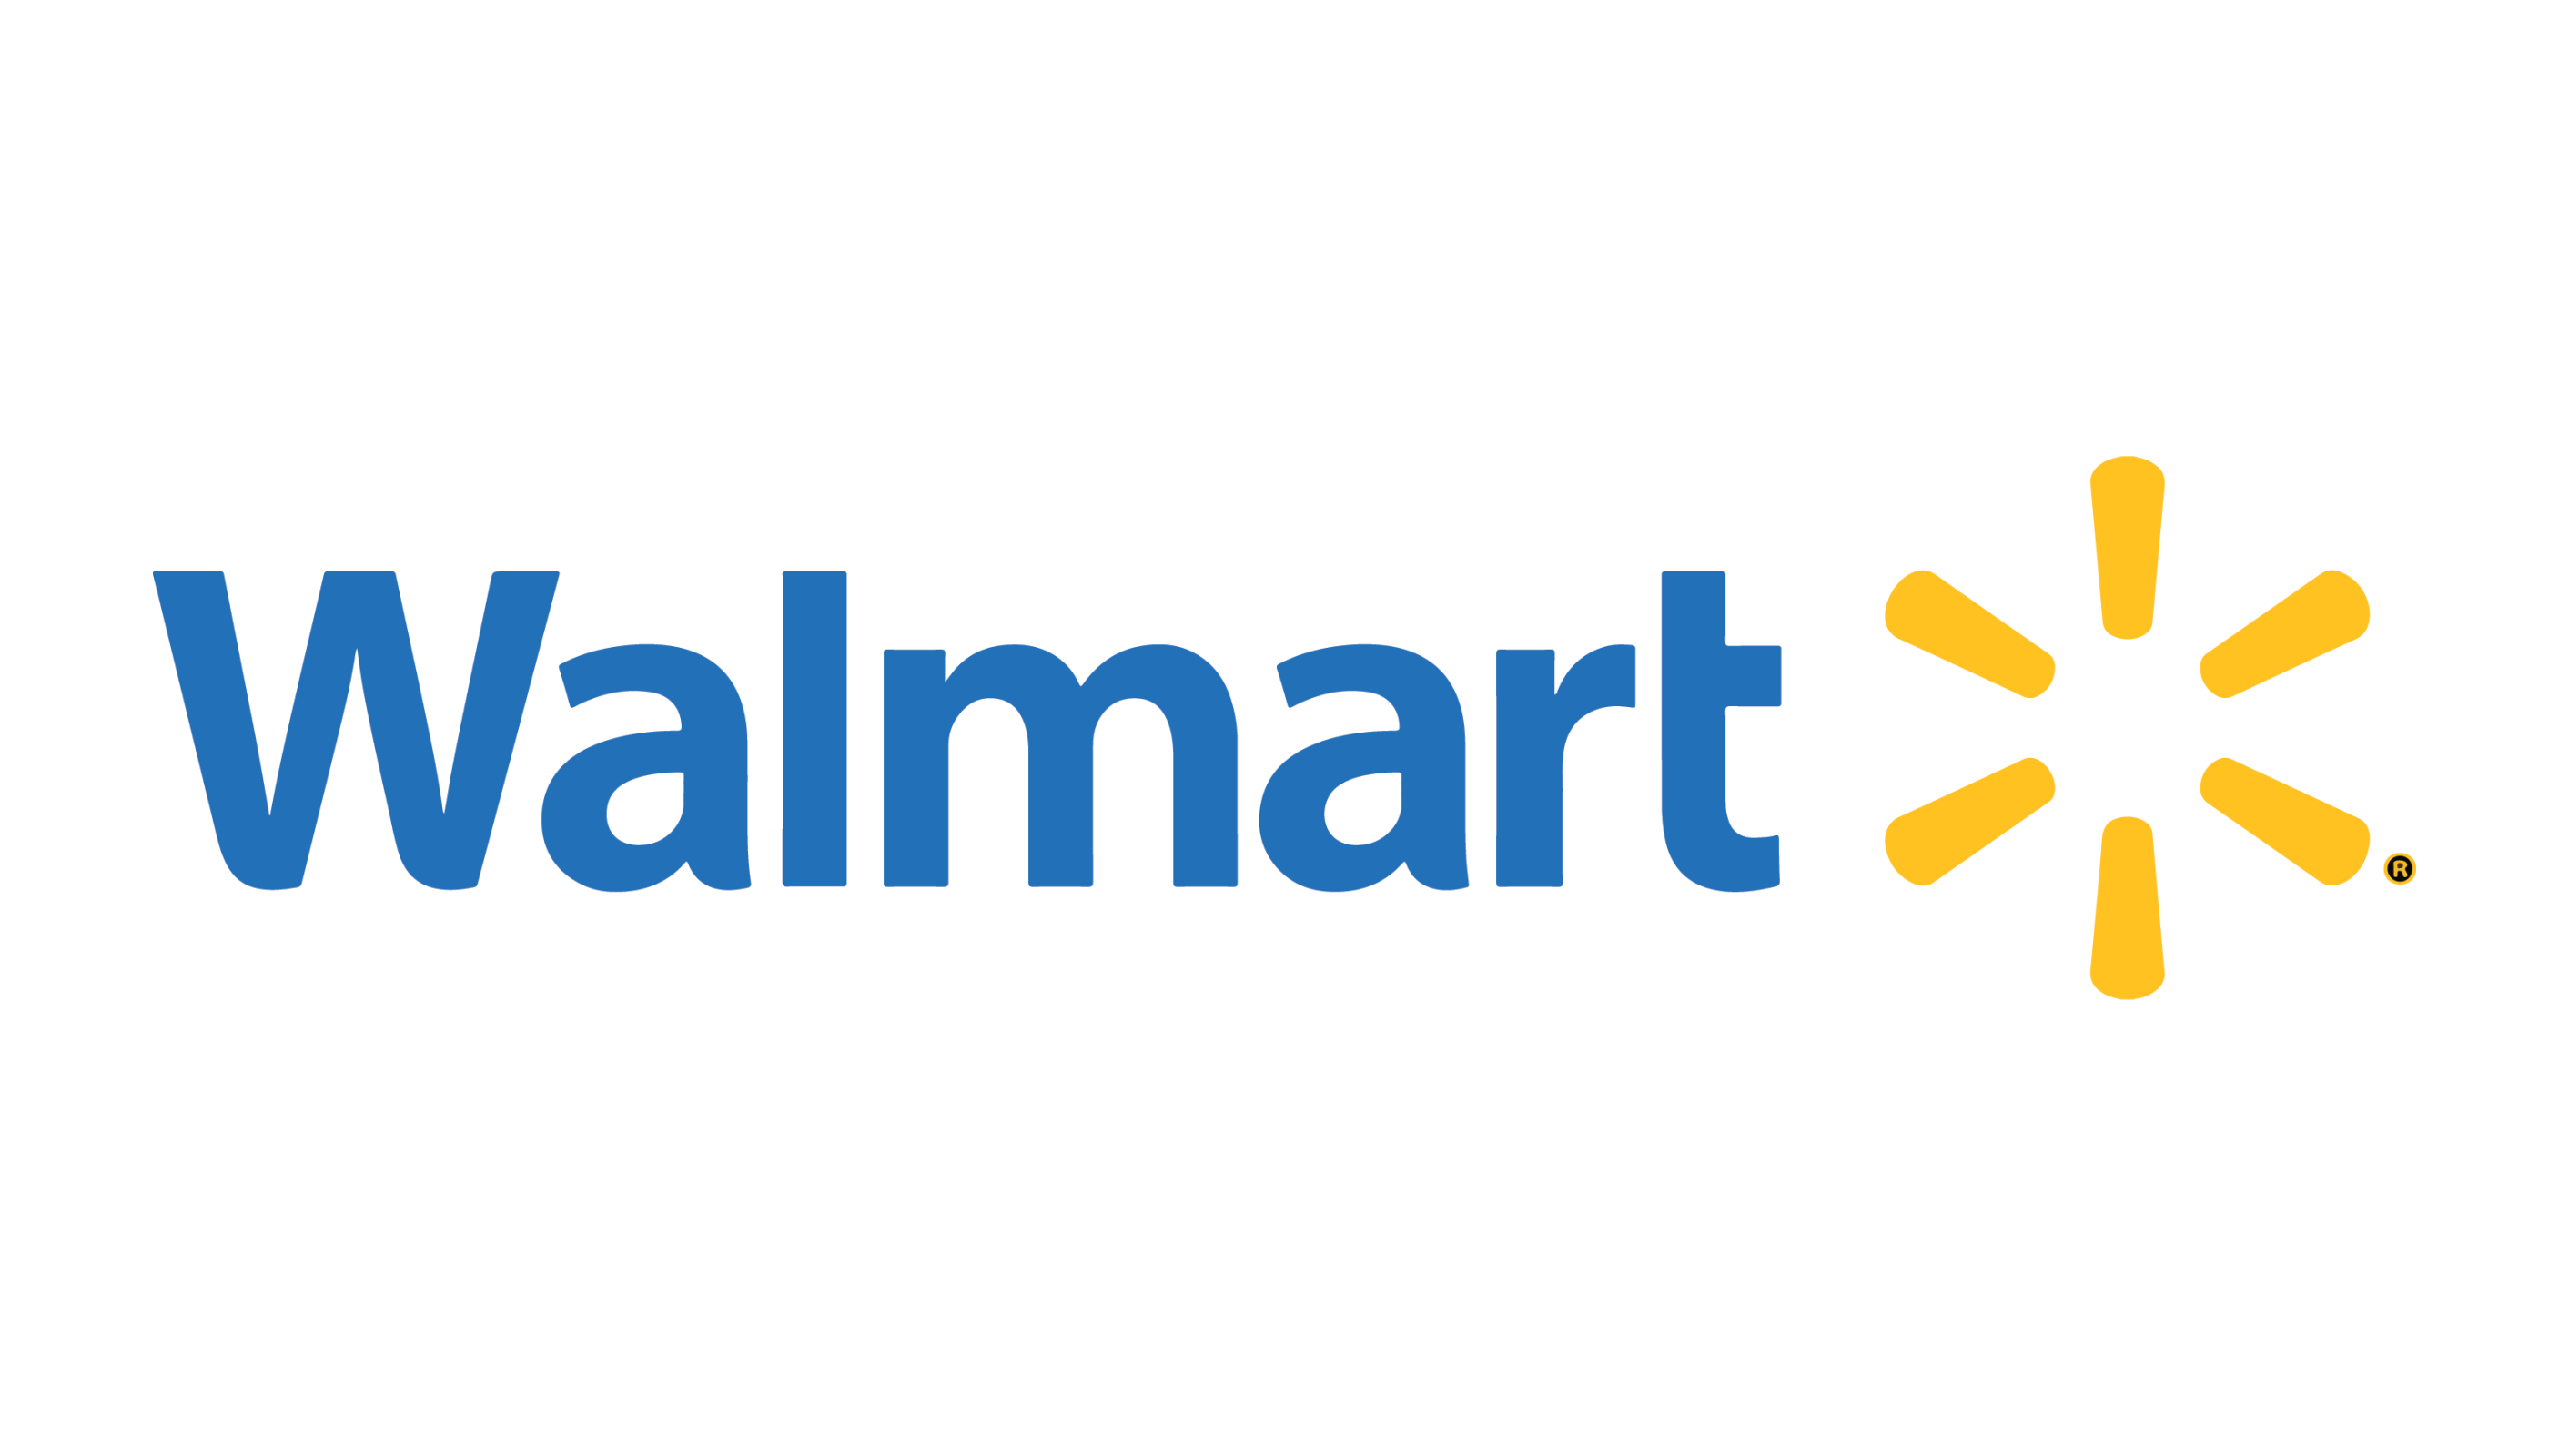 Wal-Mart Super Center's Image